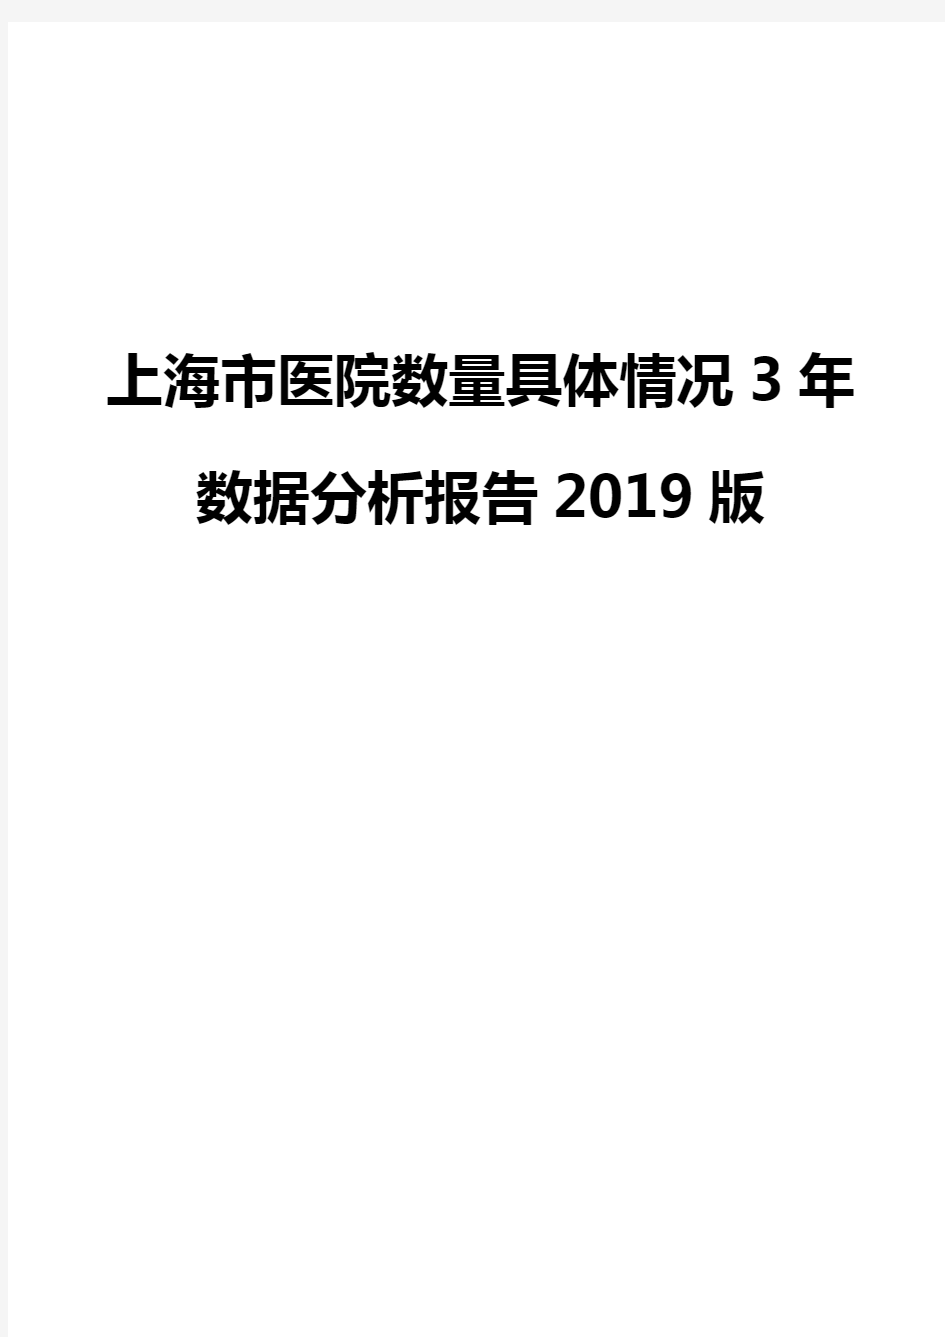 上海市医院数量具体情况3年数据分析报告2019版